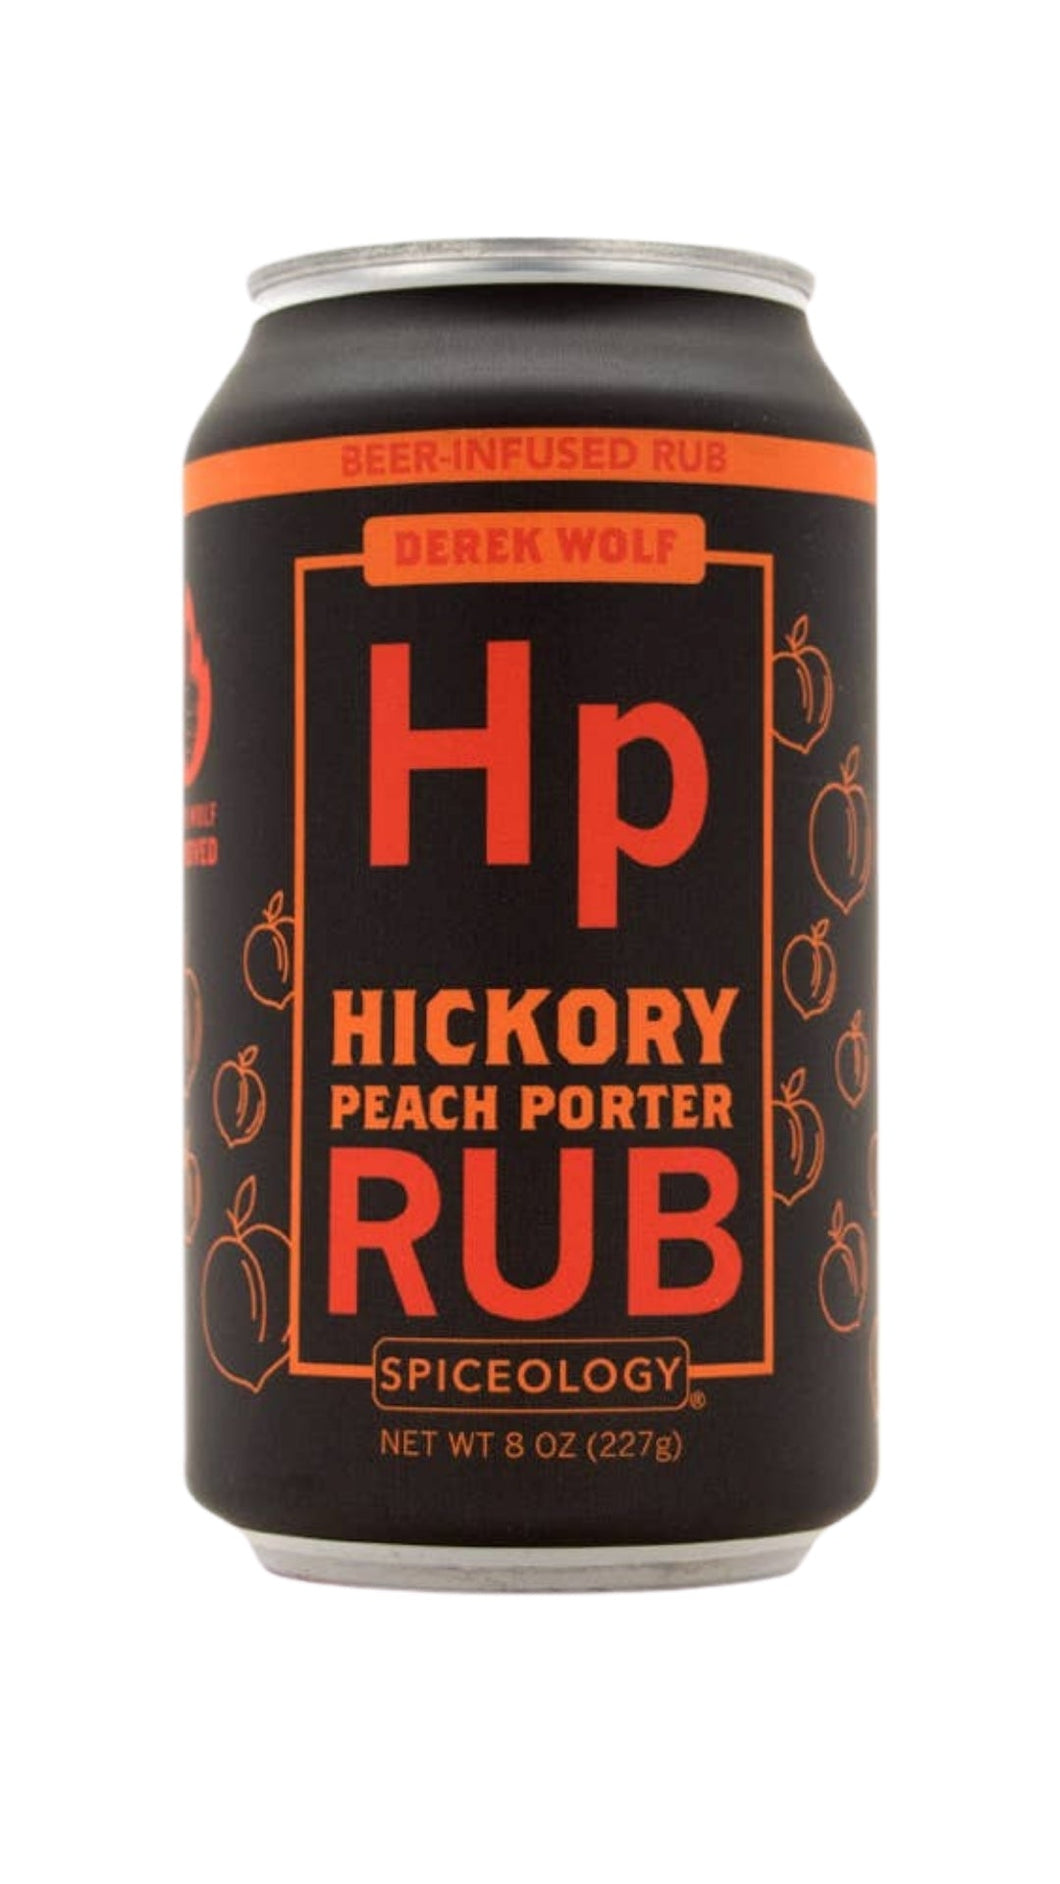 Hickory Peach Porter Rub